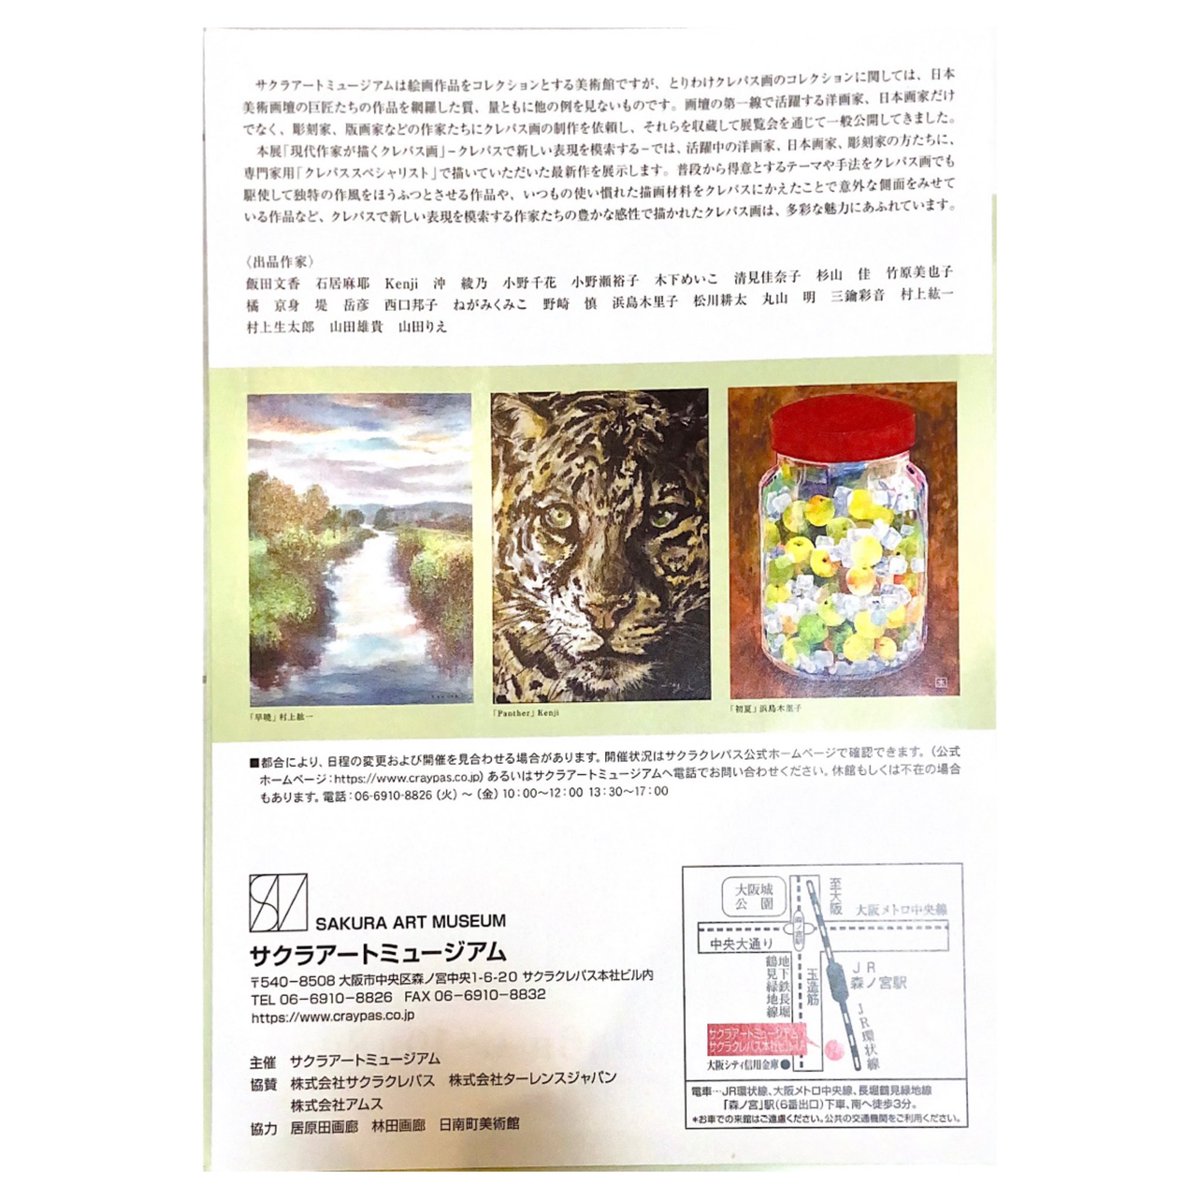 🍏お知らせ🍐
現在会期中の「現代作家が描くクレパス画」展に、私の描いた作品も2点展示して頂いています。

現在は大阪のサクラアートミュージアムで展示されており、10/20〜10/29には東京の林田画廊さんにて巡回展示されます。 